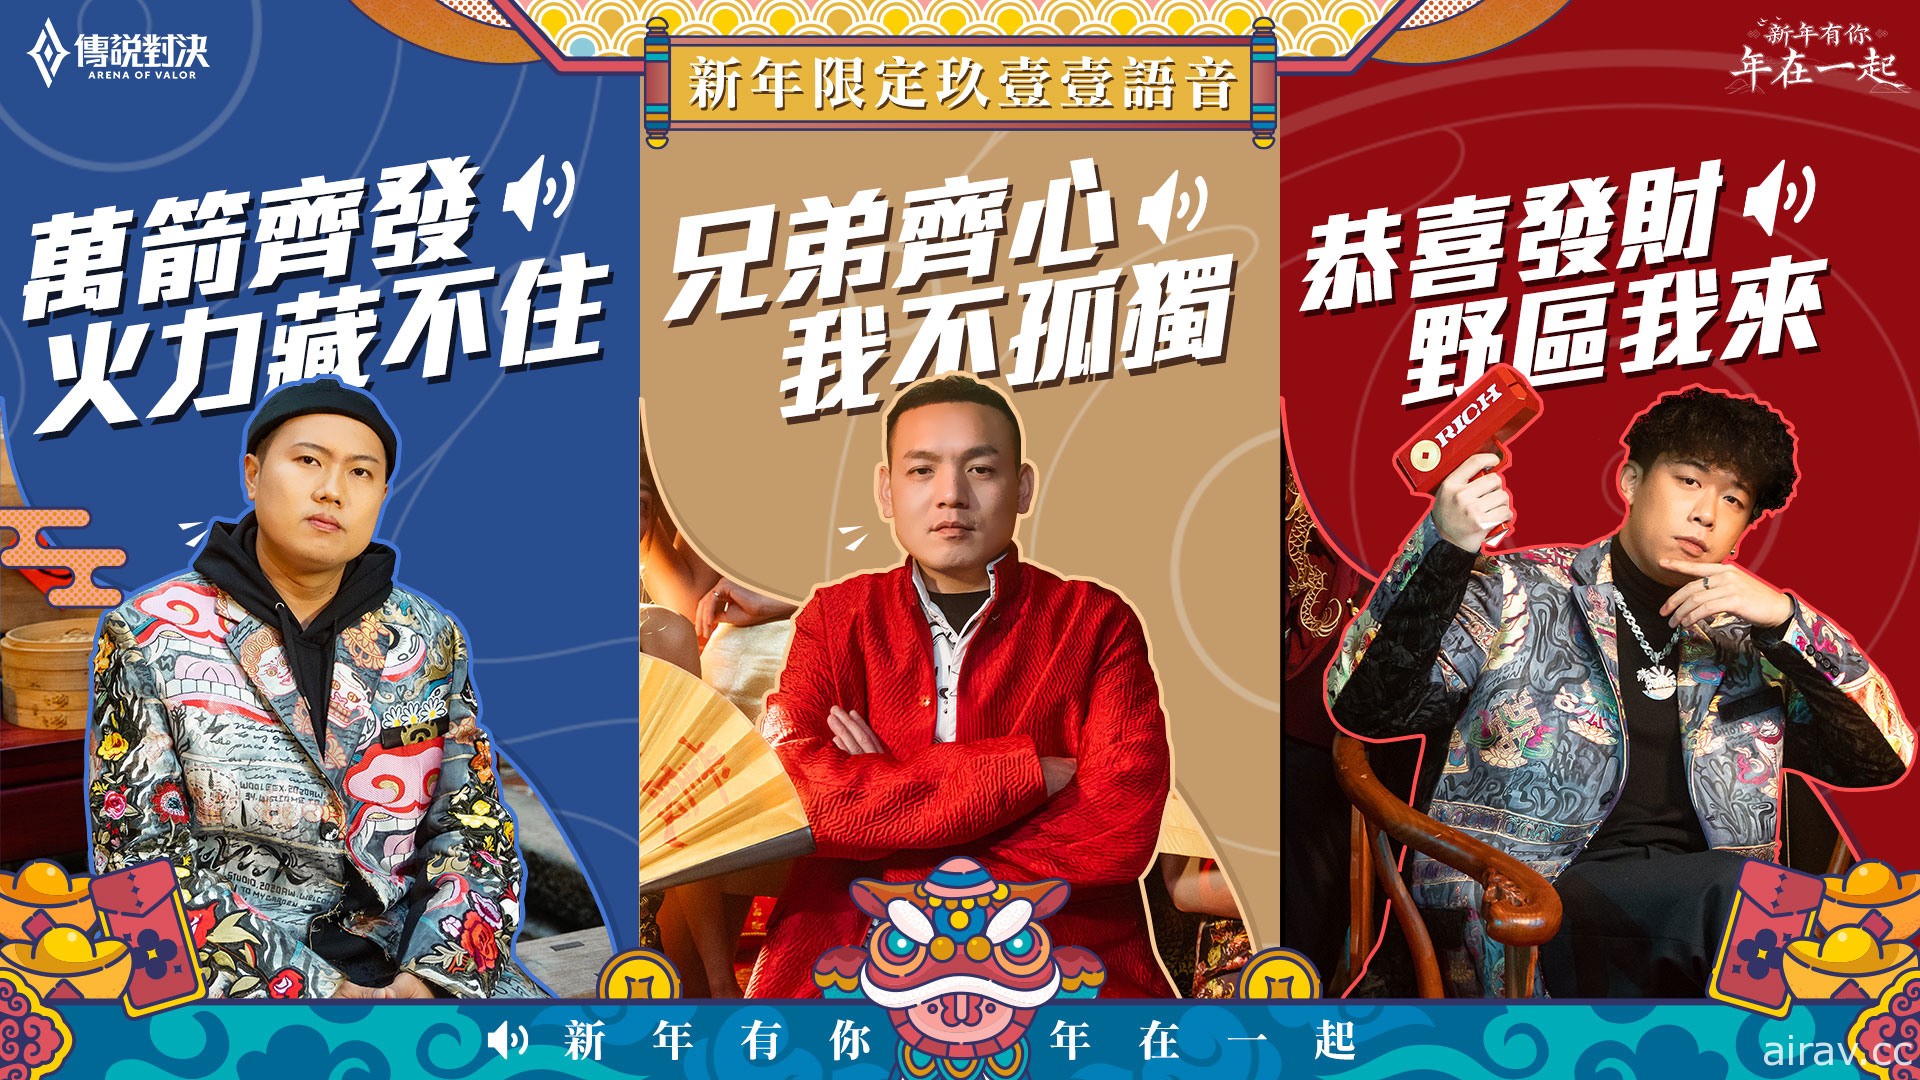 《傳說對決》攜手「玖壹壹」推出新年主題曲「戰場傳說」 陪伴玩家度過新年